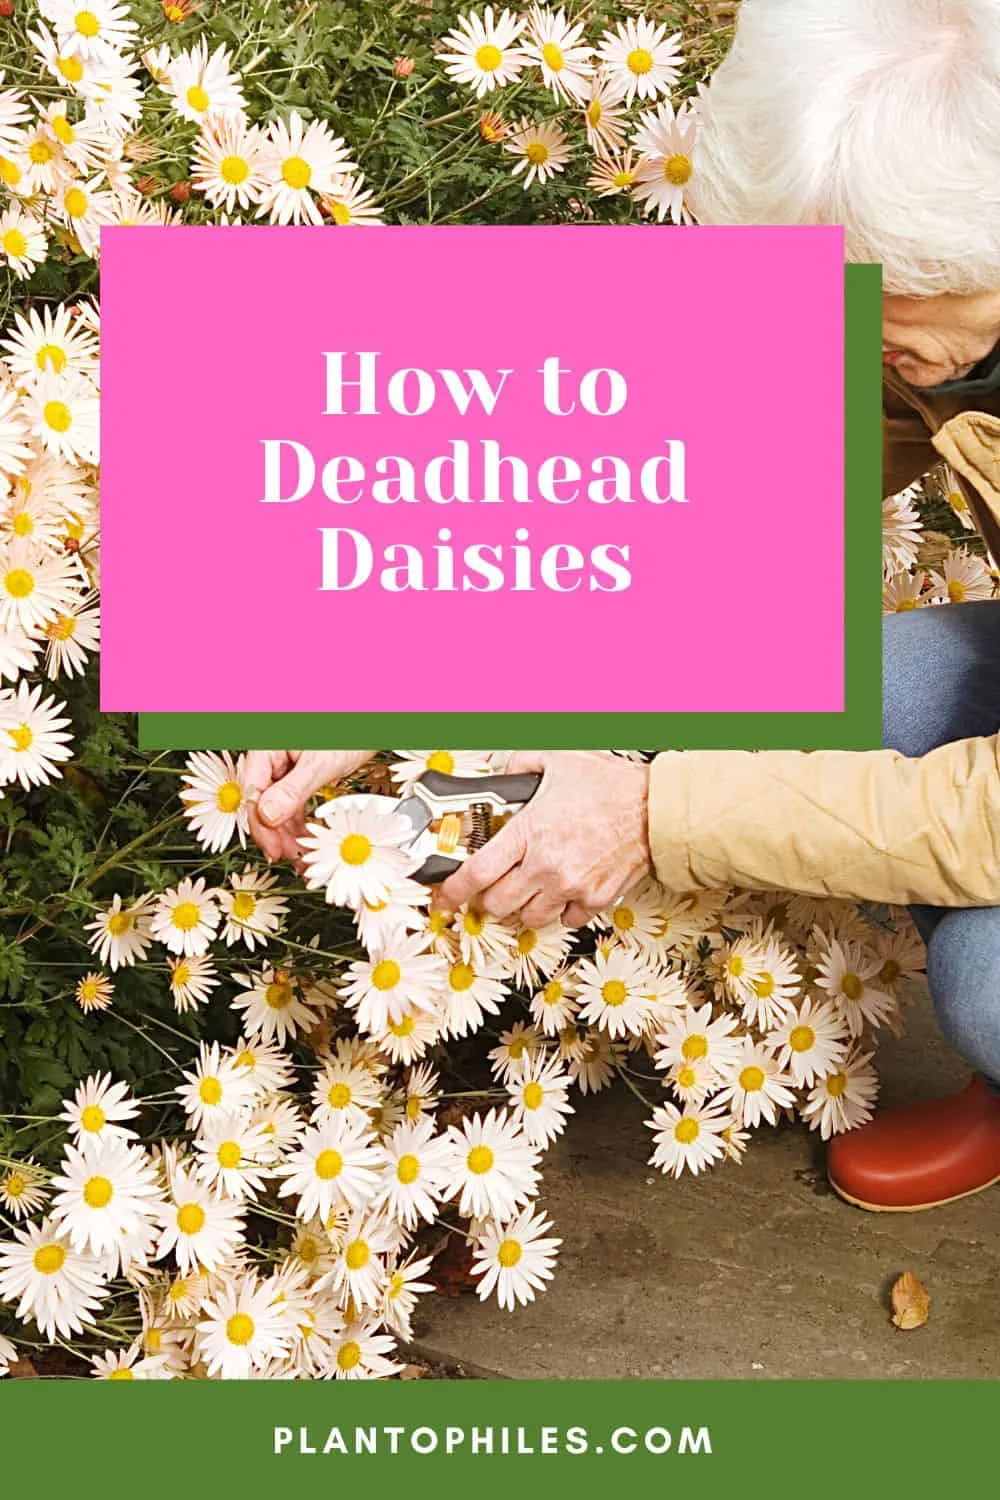 How to Deadhead Daisies